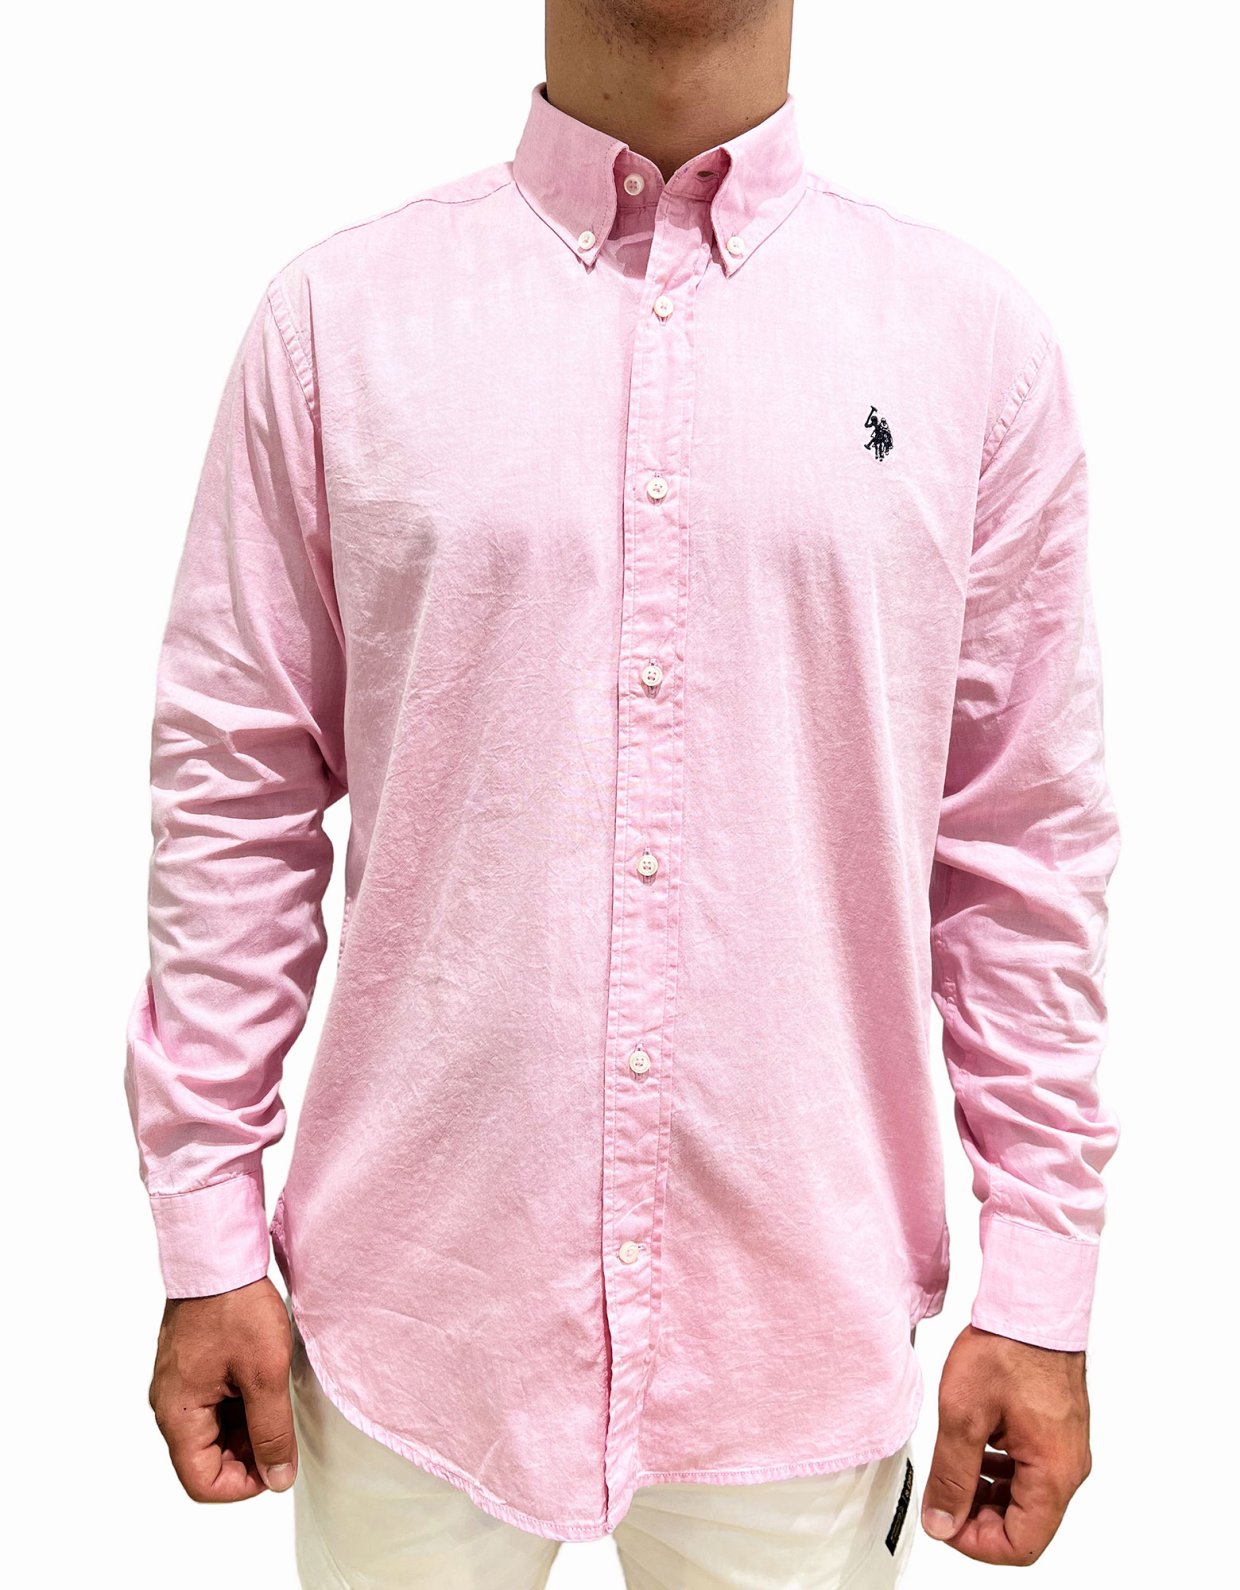 U.S Polo ASSN Evan shirt pink